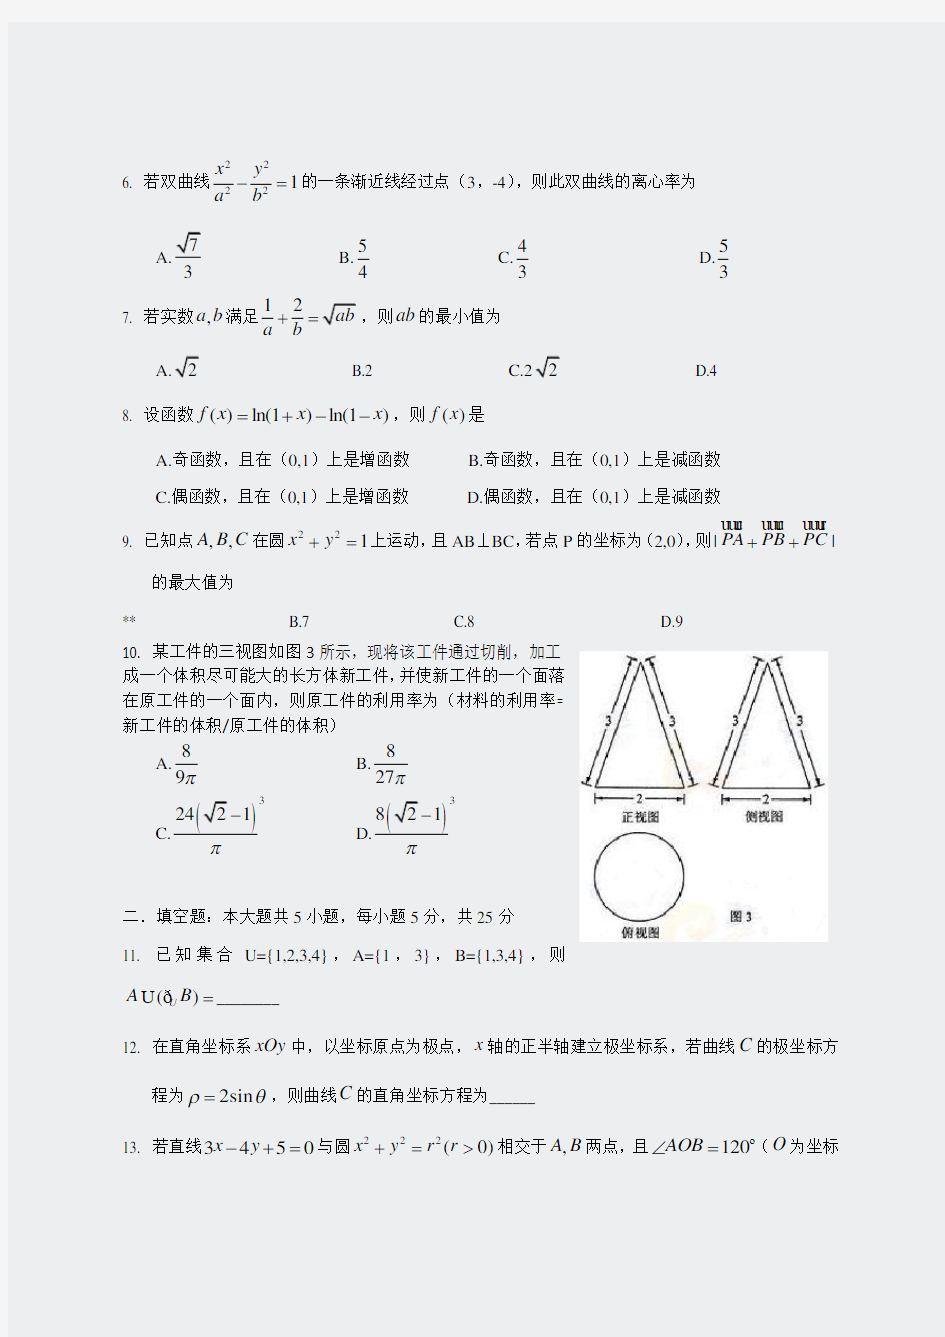 2015年全国高考文科数学试题及答案-湖南卷